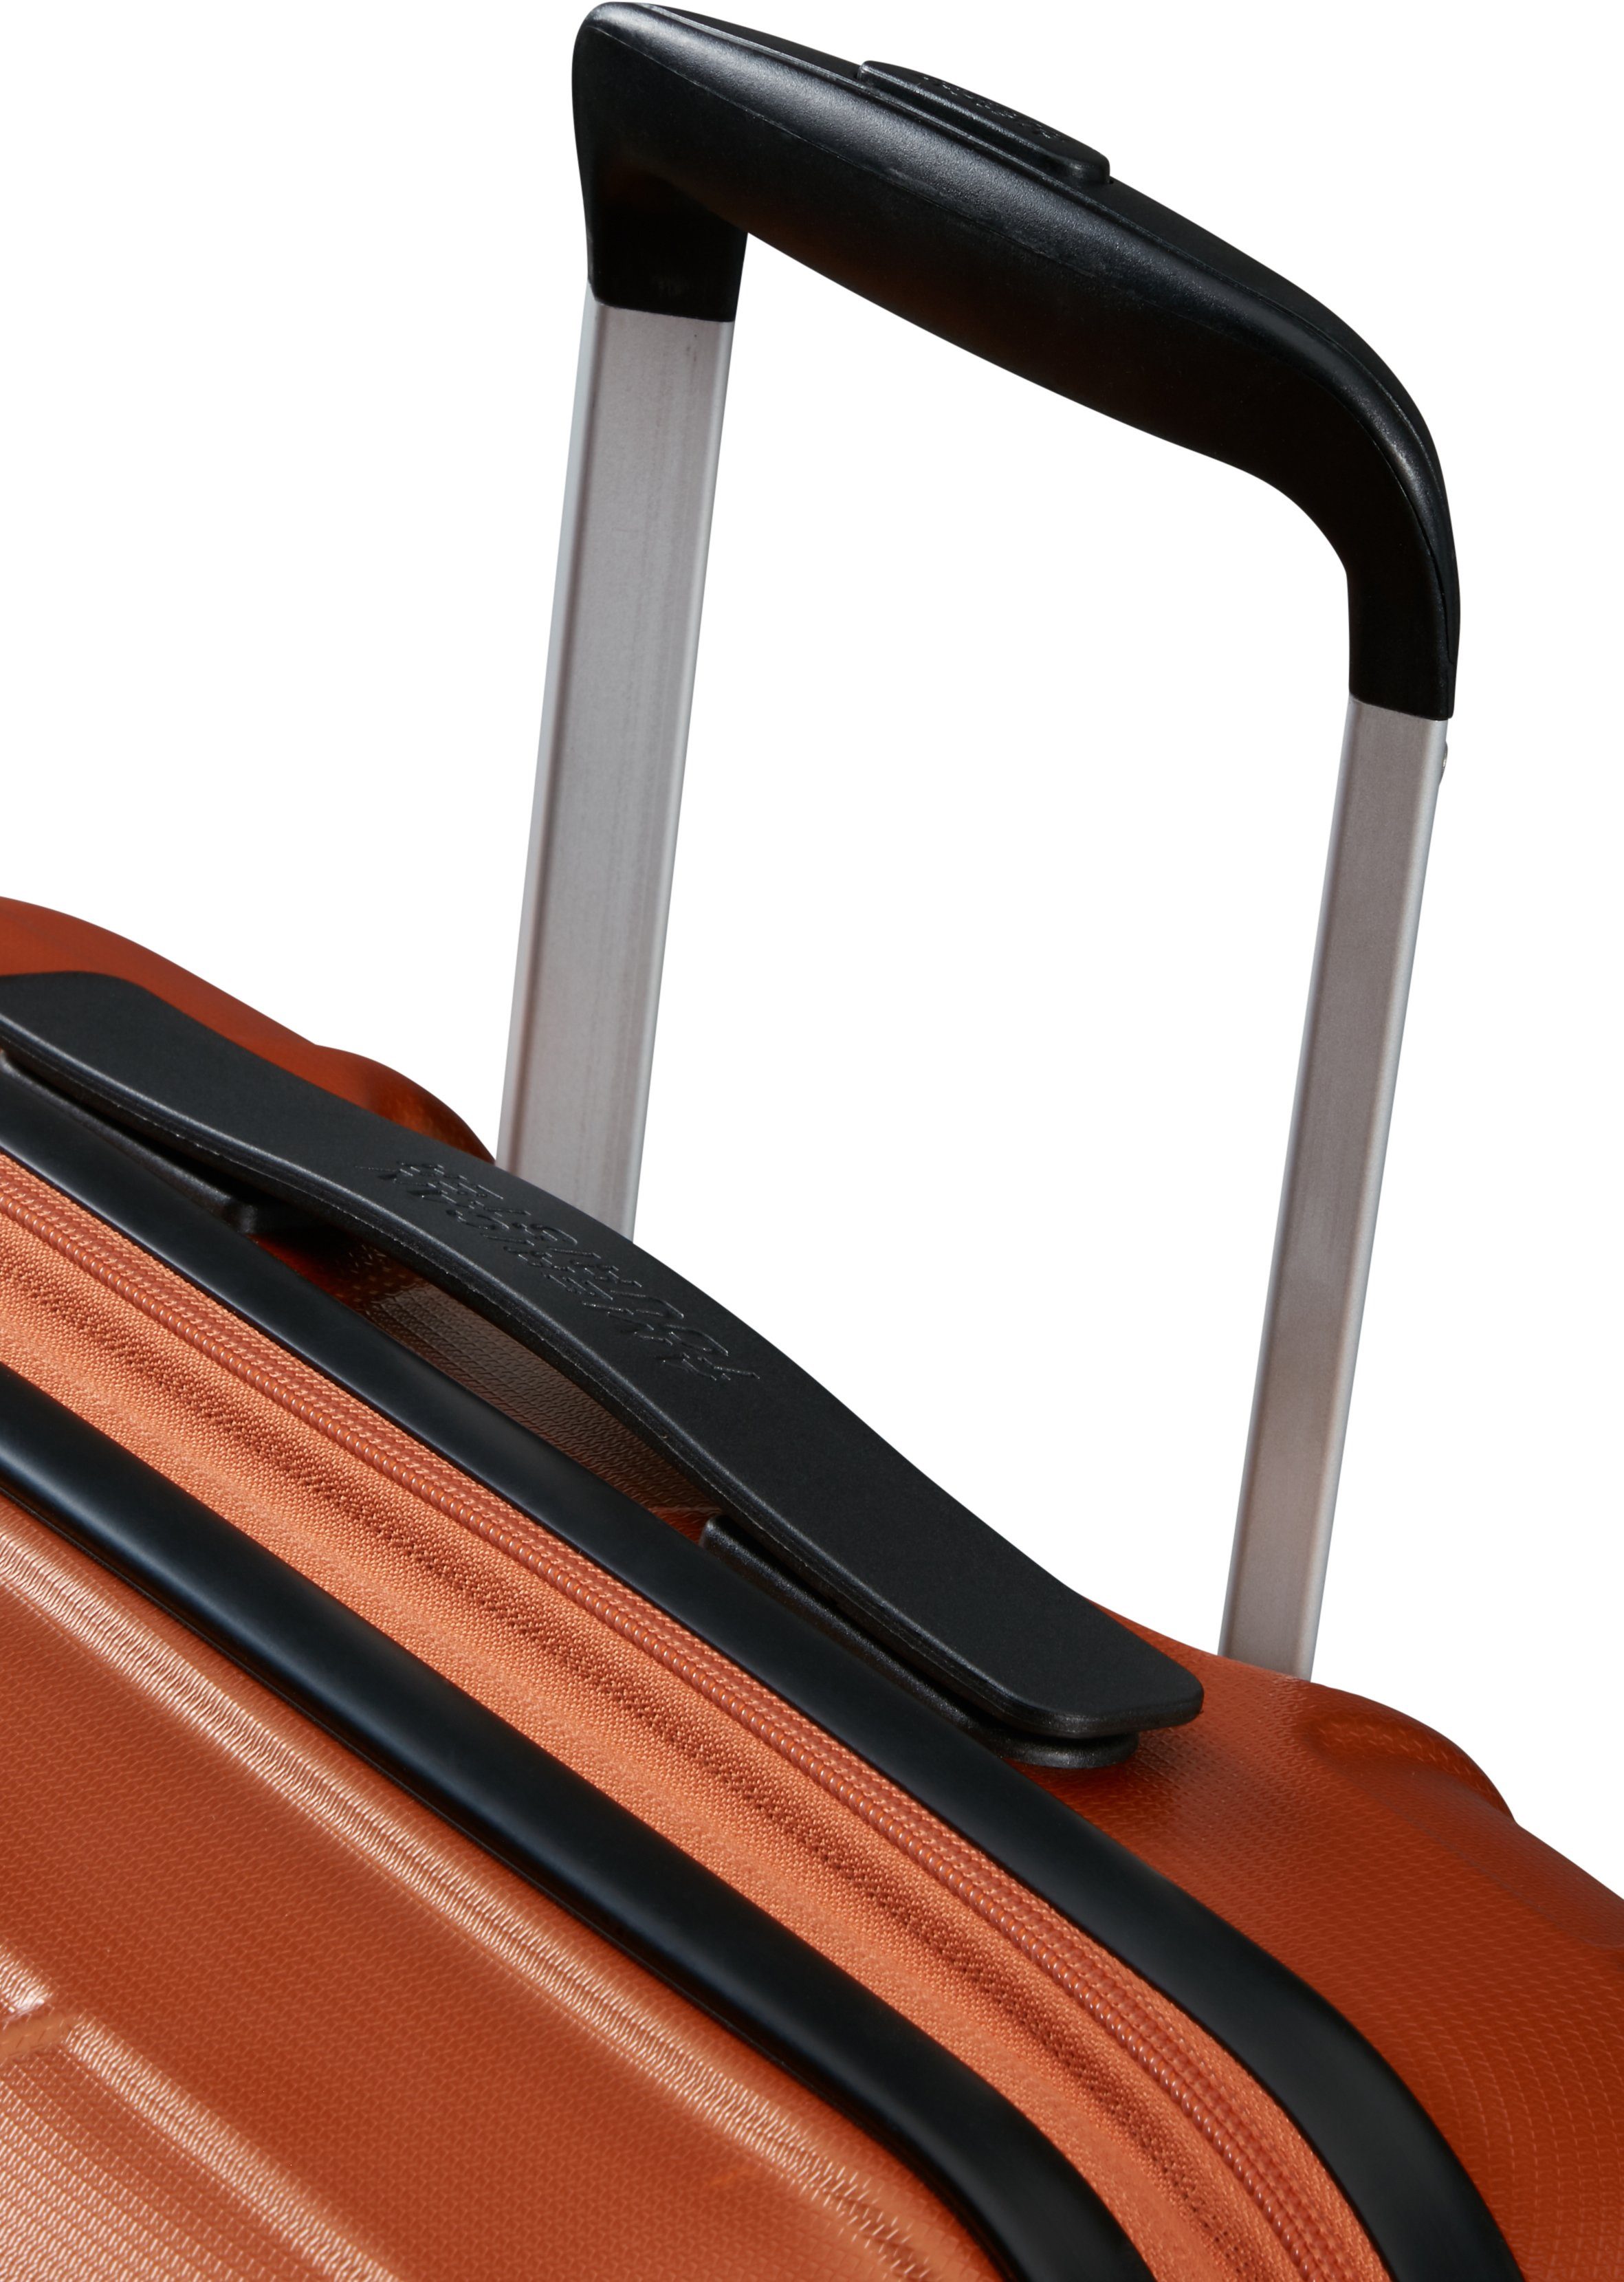 Hartschalen-Trolley Copper mit 67 Tourister® cm, Volumenerweiterung 4 Rollen, Orange Speedstar, American